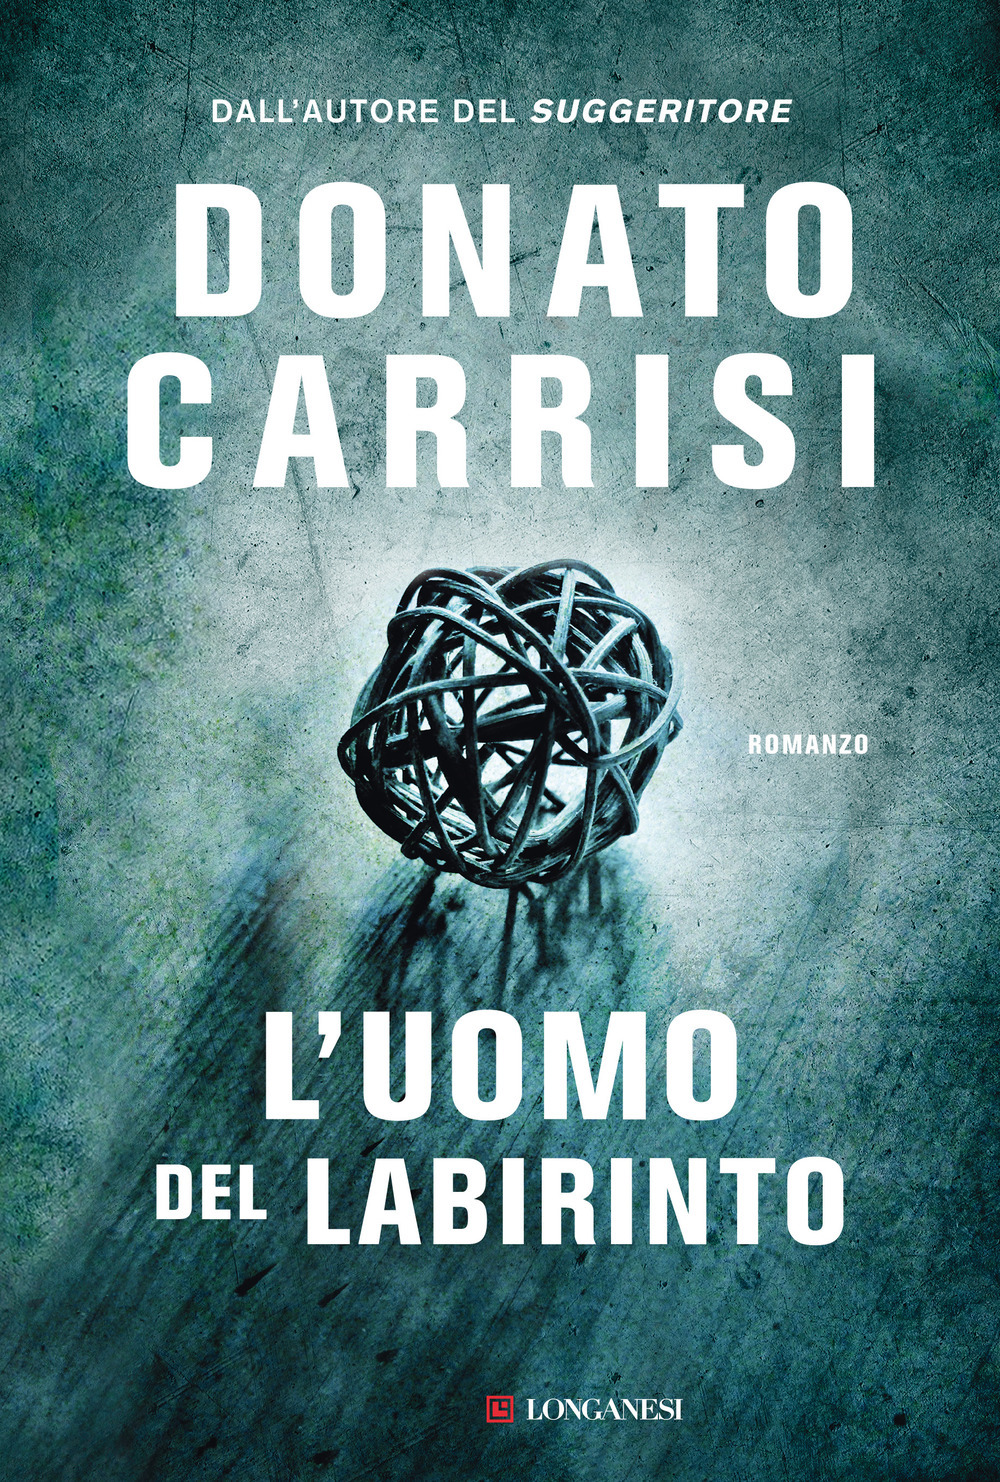 L'uomo del labirinto, Donato Carrisi